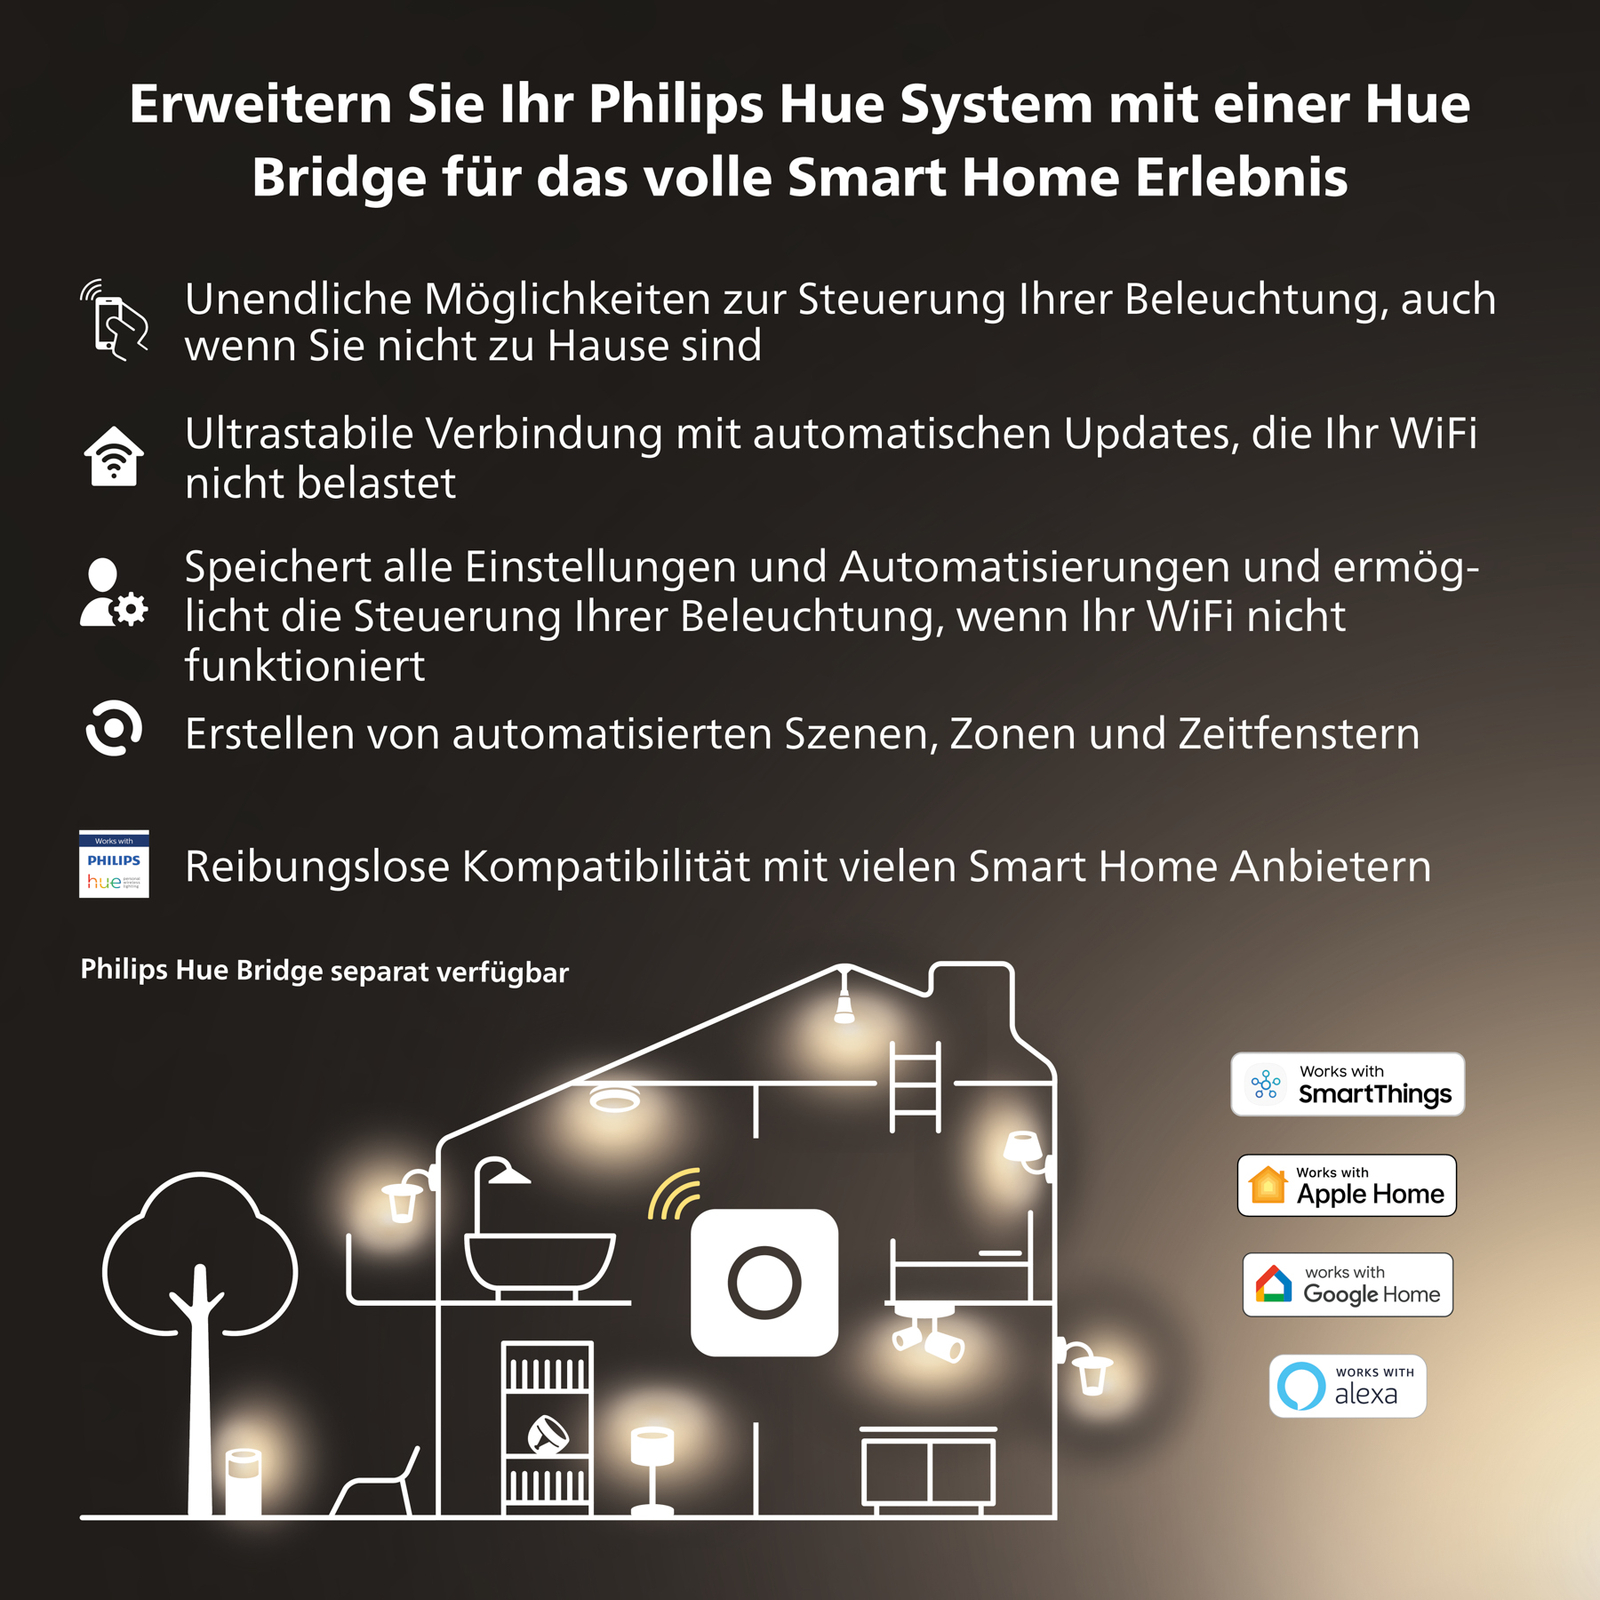 Philips Hue White Ambiance E27 8W LED žárovka, 2ks